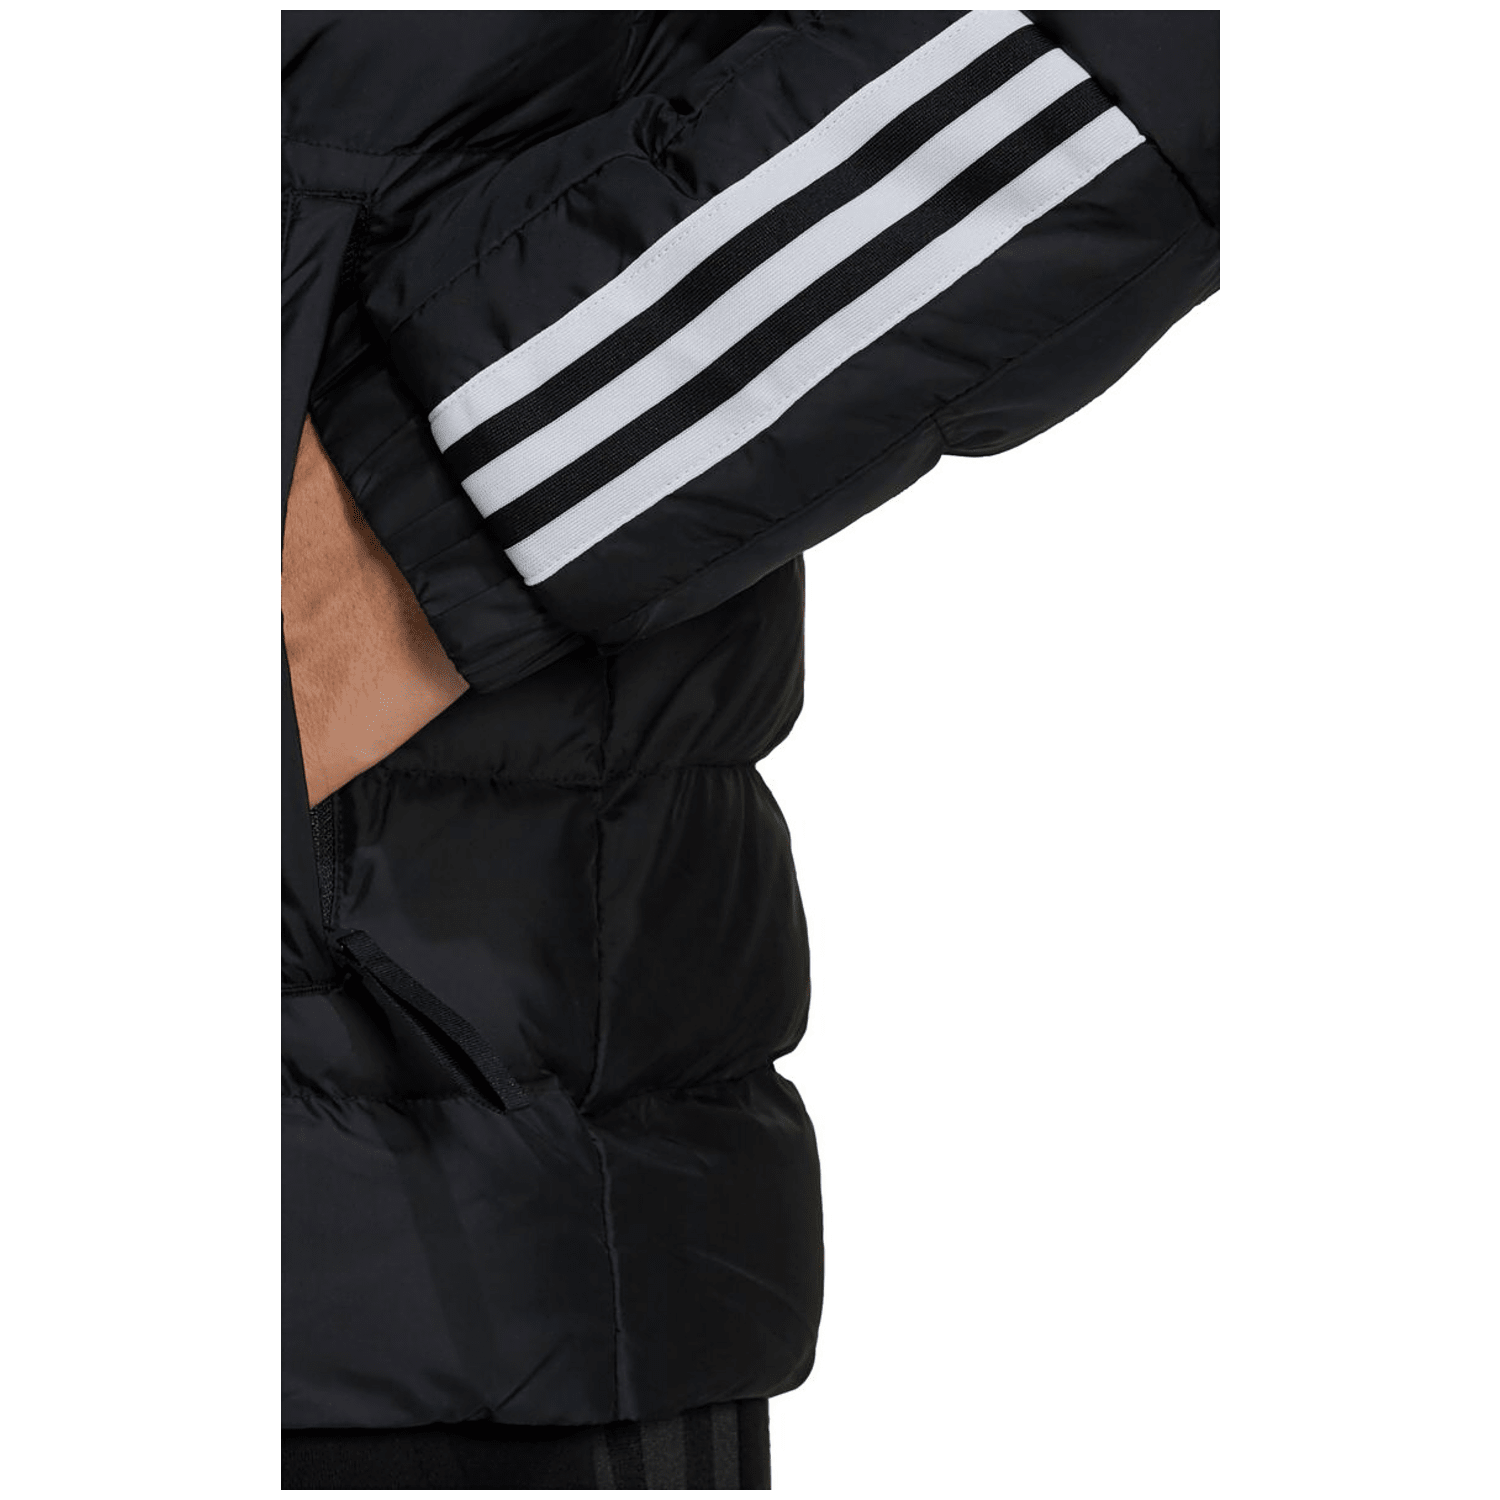 Adidas Itavic 3-Streifen Midweight Hooded Jacke Herren